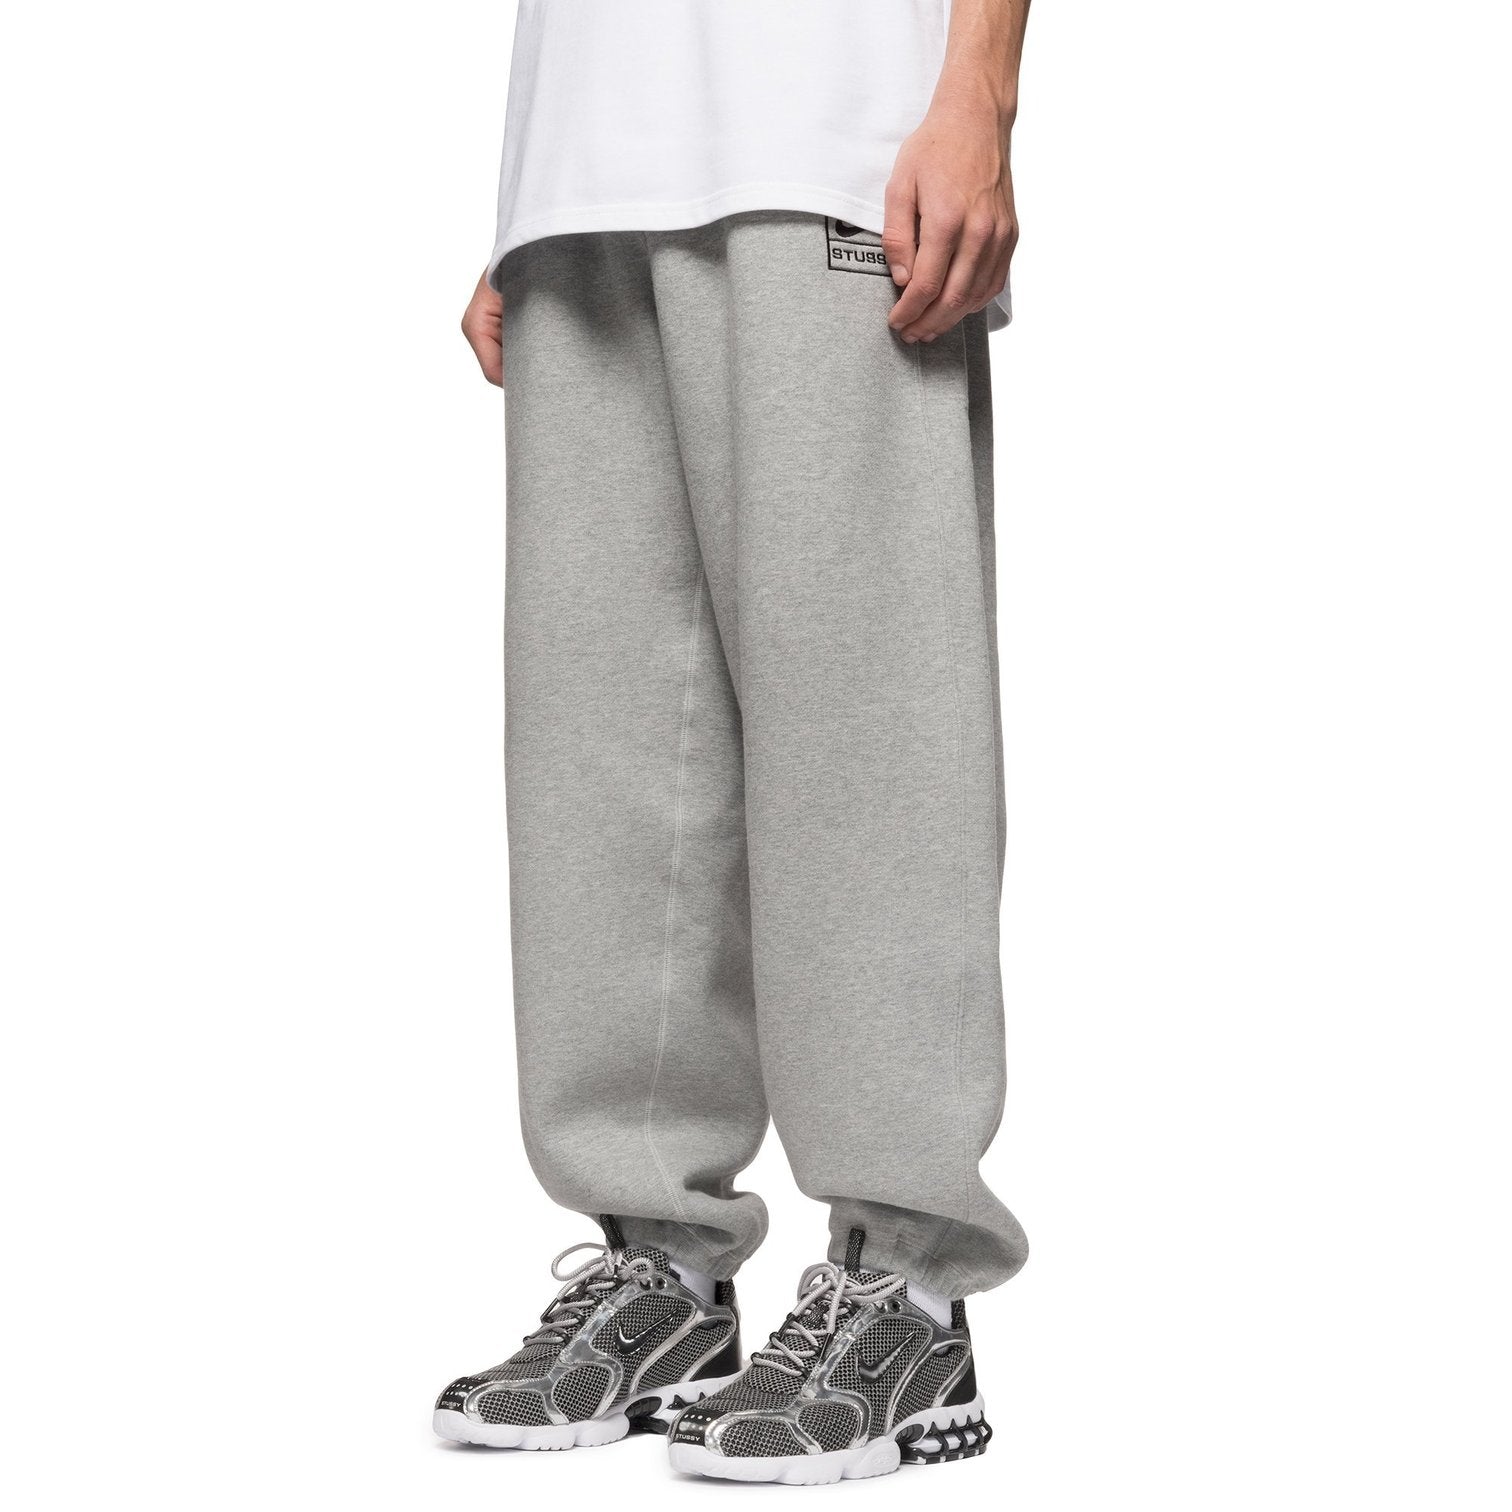 Nike x Stussy International Sweatpants Grey S/S 21